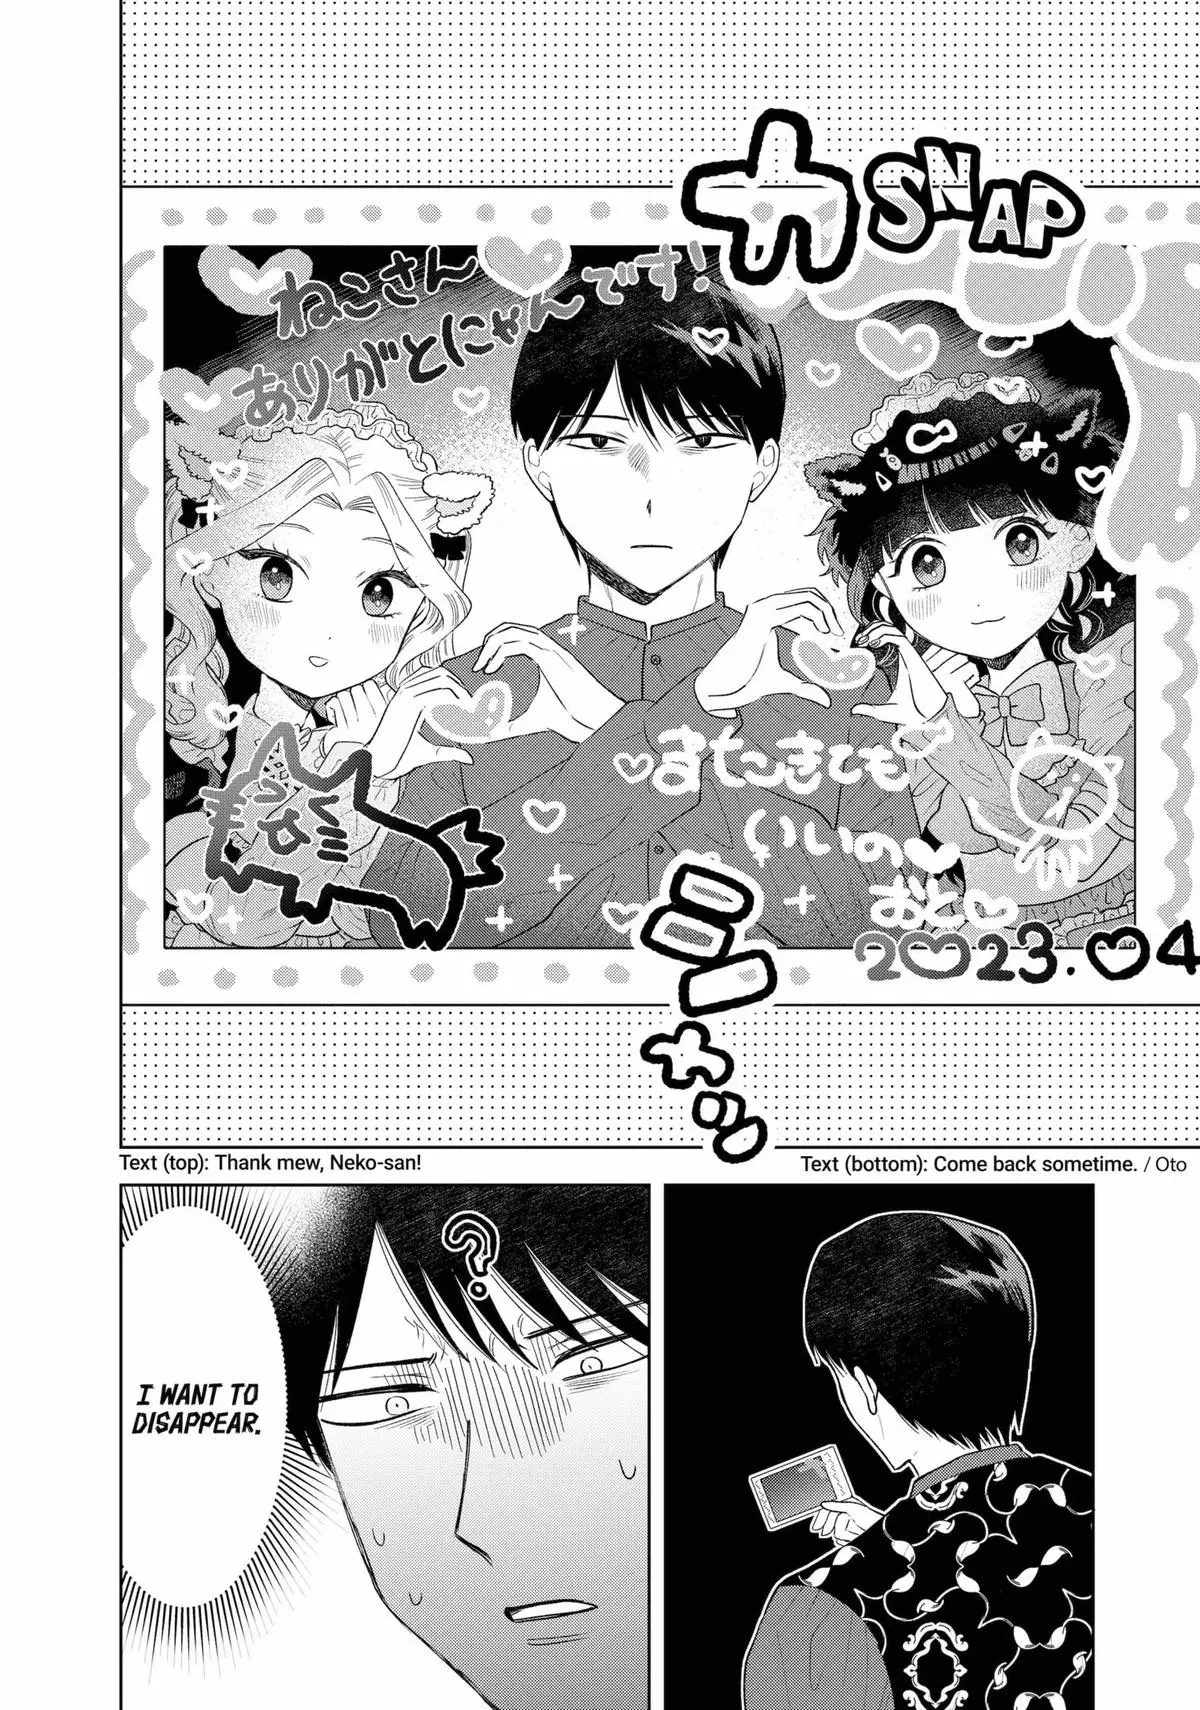 Tsuruko Returns The Favor - 8 page 18-536ecf14